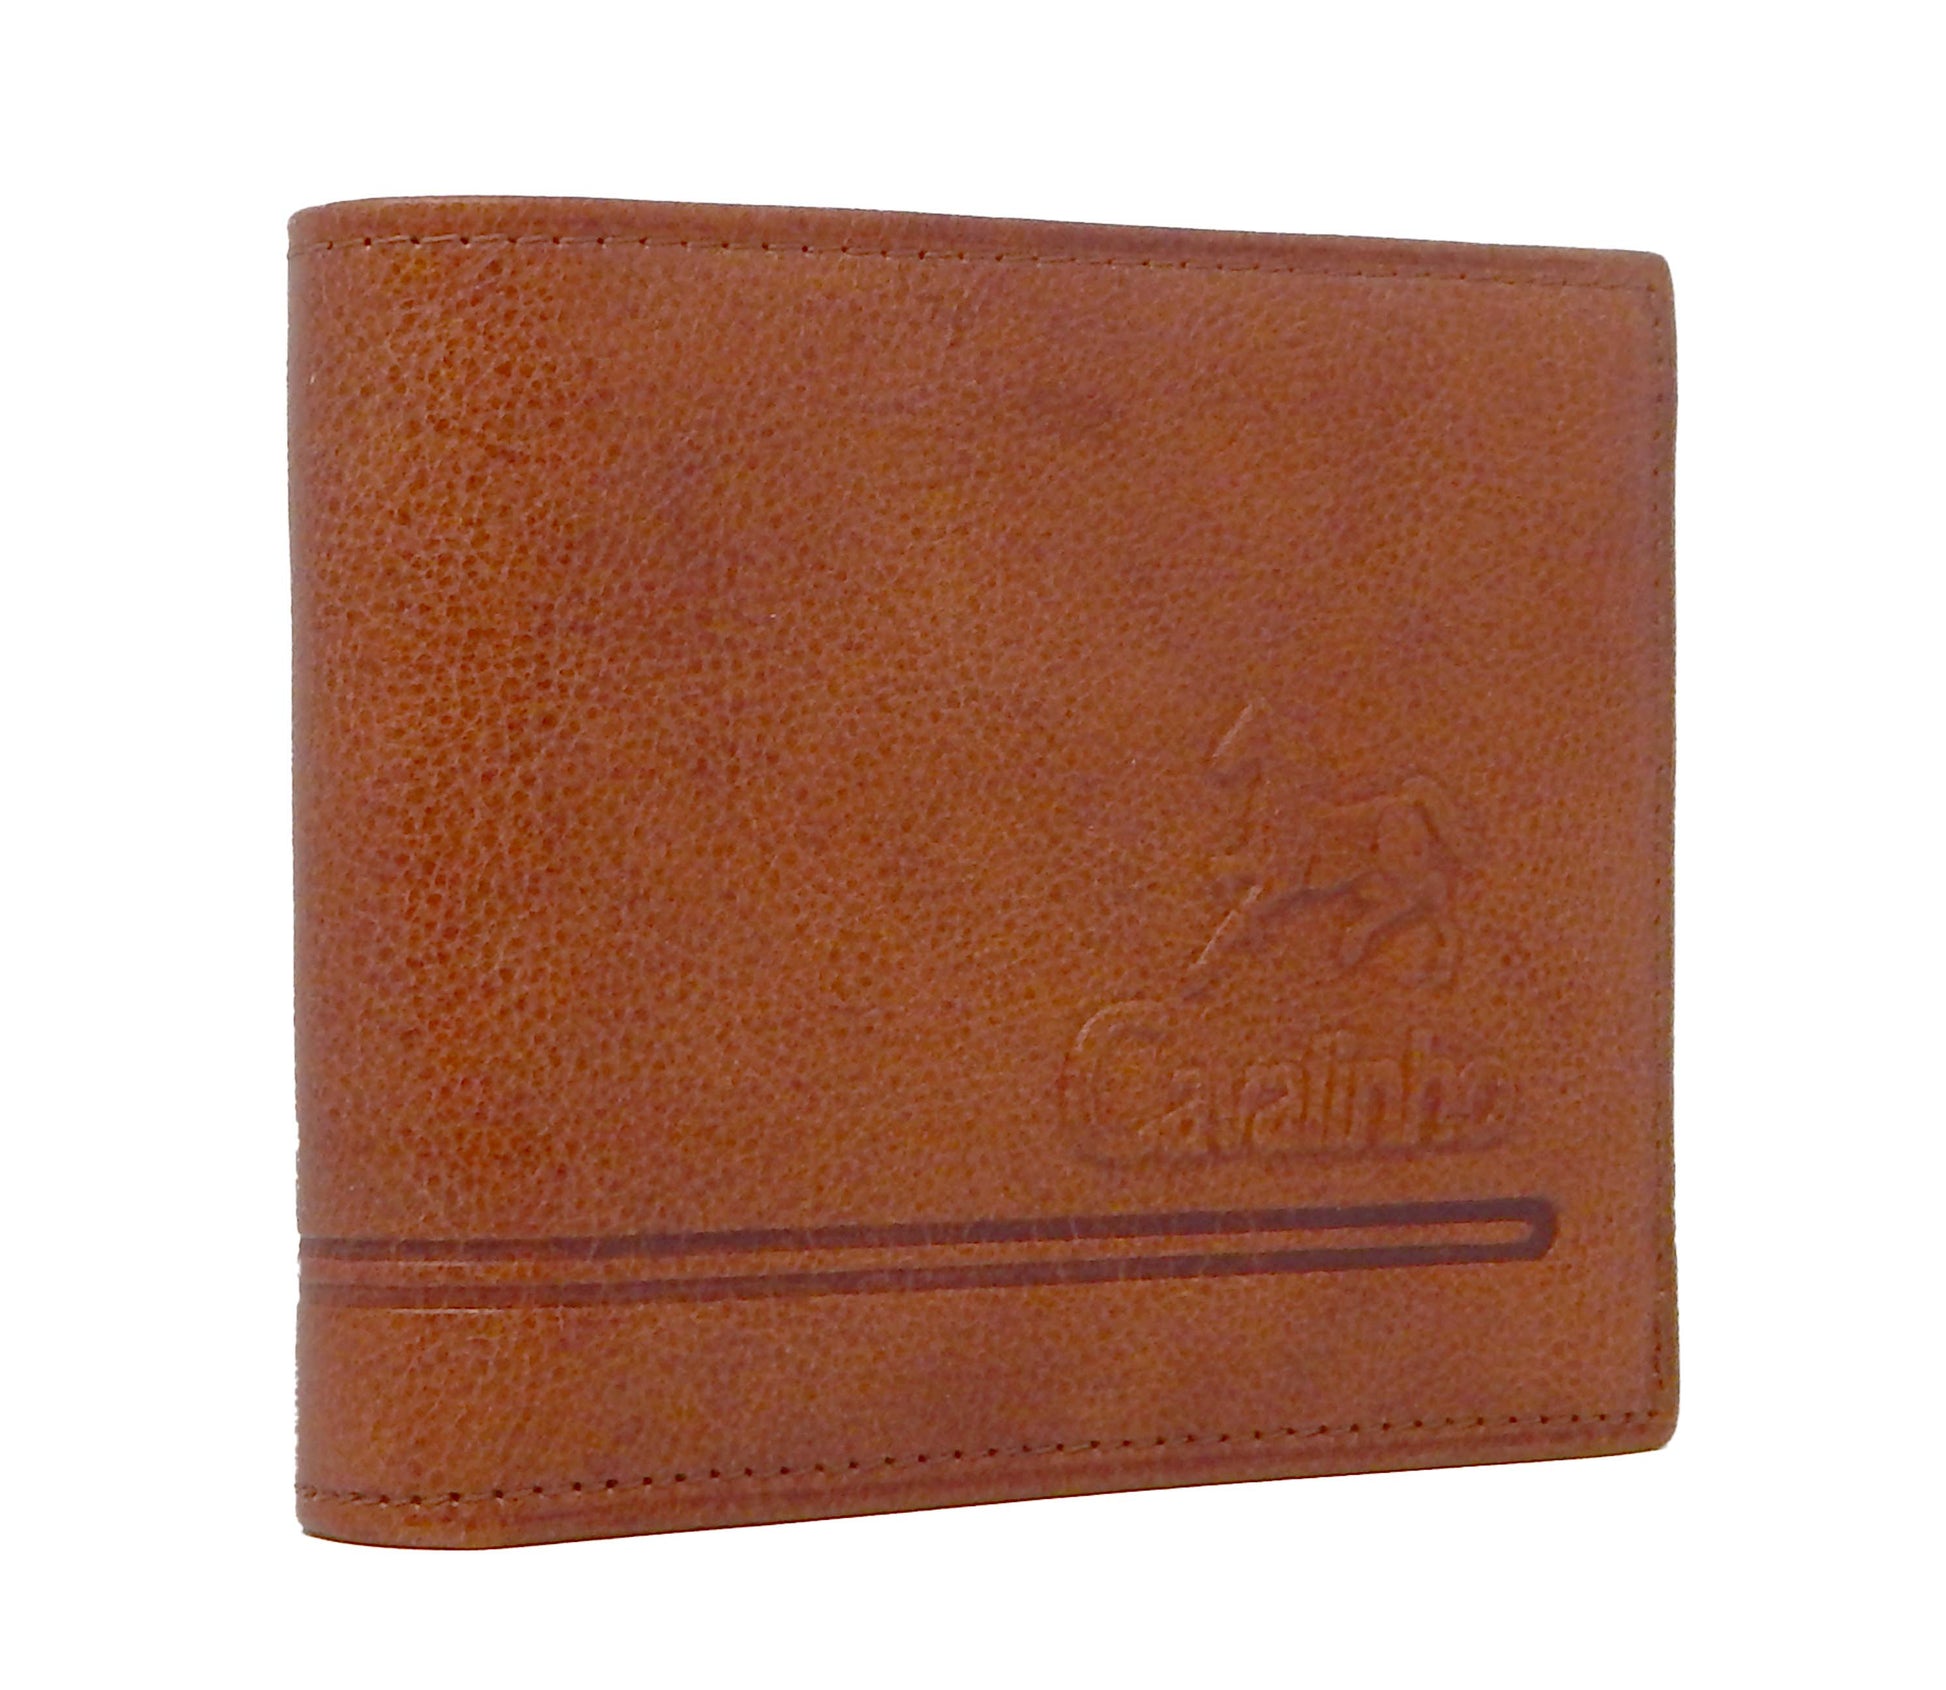 #color_ SaddleBrown | Cavalinho Men's Trifold Leather Wallet - SaddleBrown - 28610505.13.99_2